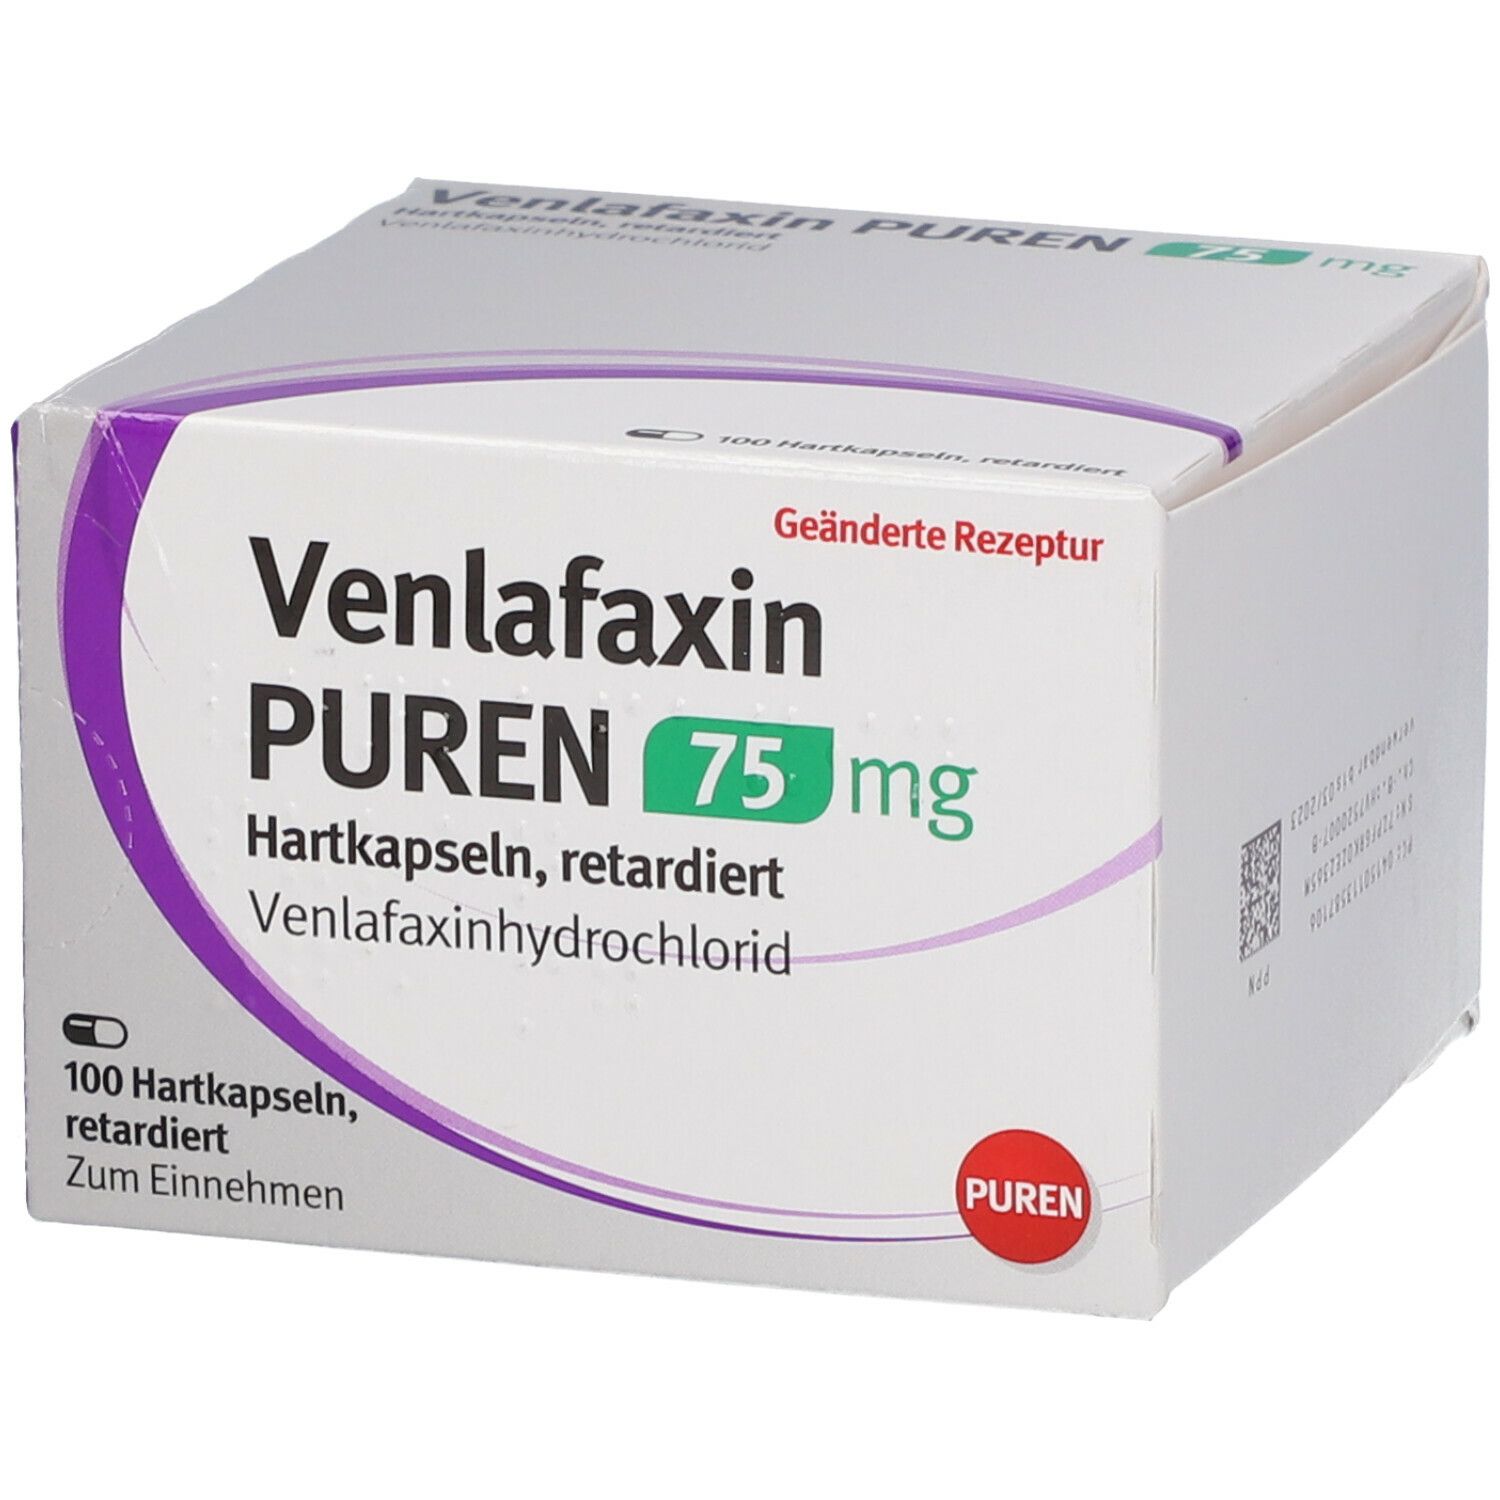 Venlafaxin PUREN 75 mg